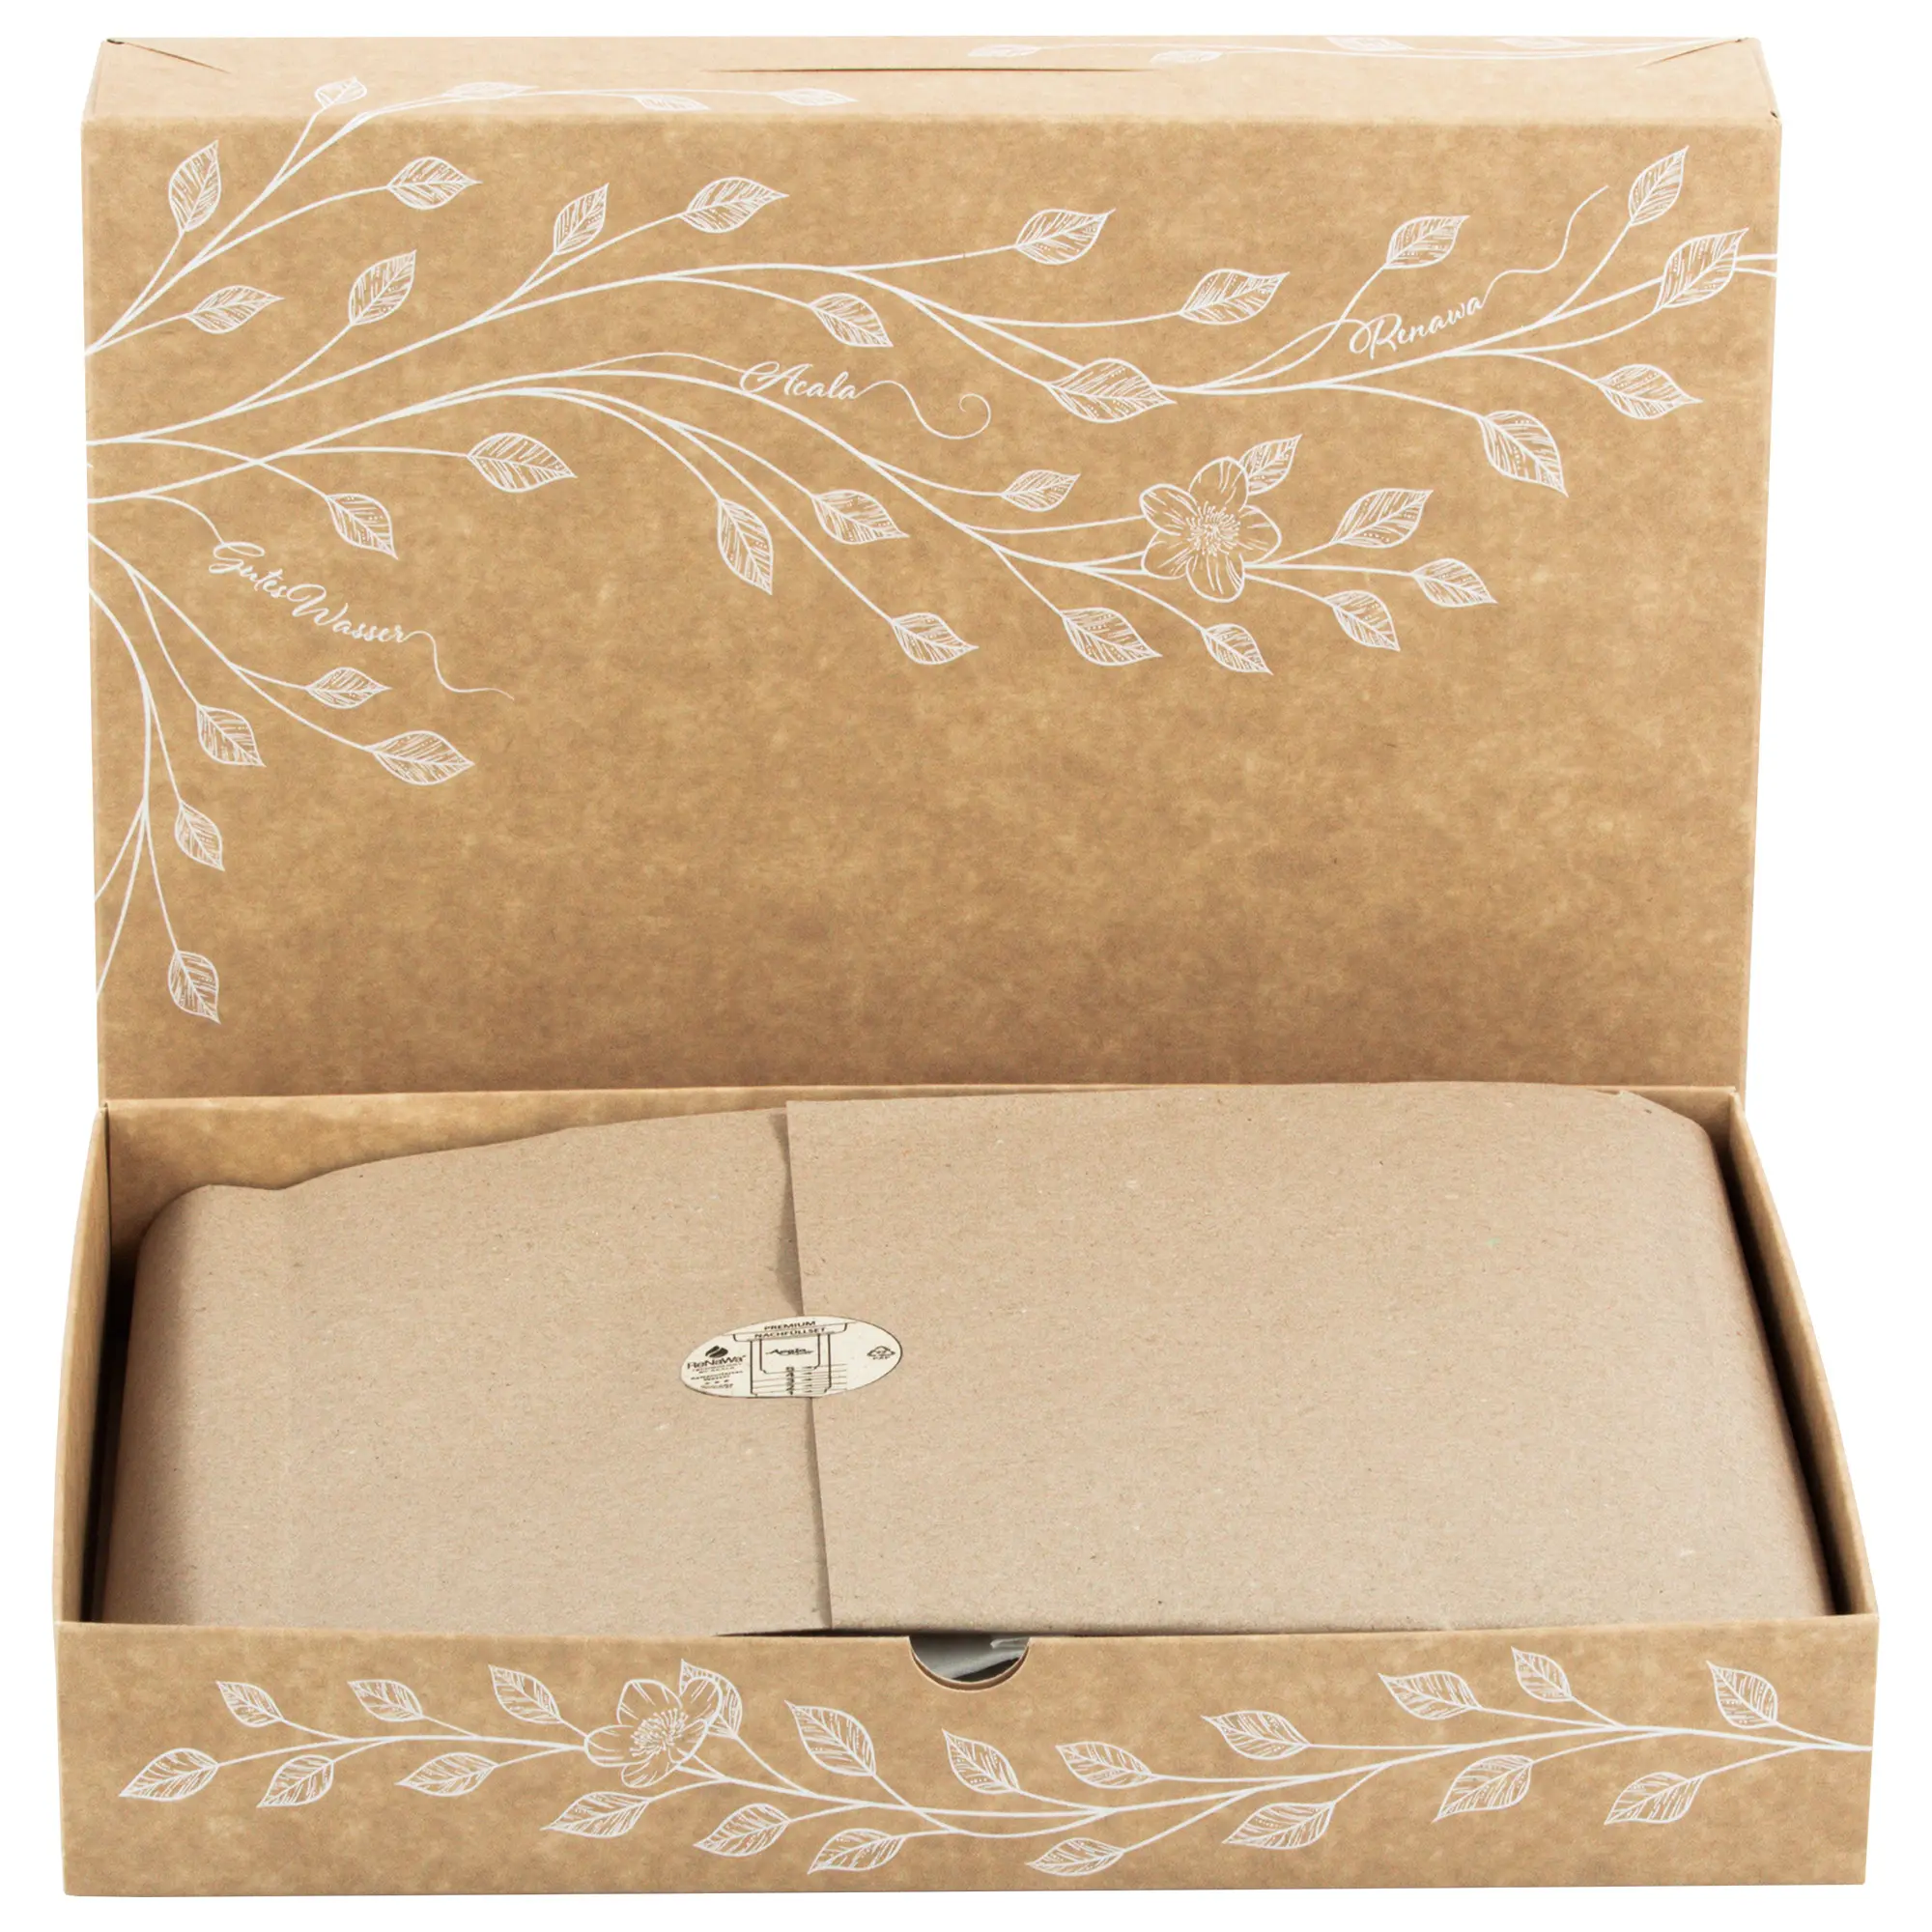 Man sieht die Verpackung für die ReNaWa Nachfüll-Komponenten für 1 Jahr. Der Karton ist Naturbraun, bedruckt mit weißen Blätterranken und Infos zum Inhalt. Die Schublade befindet sich vor dem Karton, so dass man hinein schauen kann.